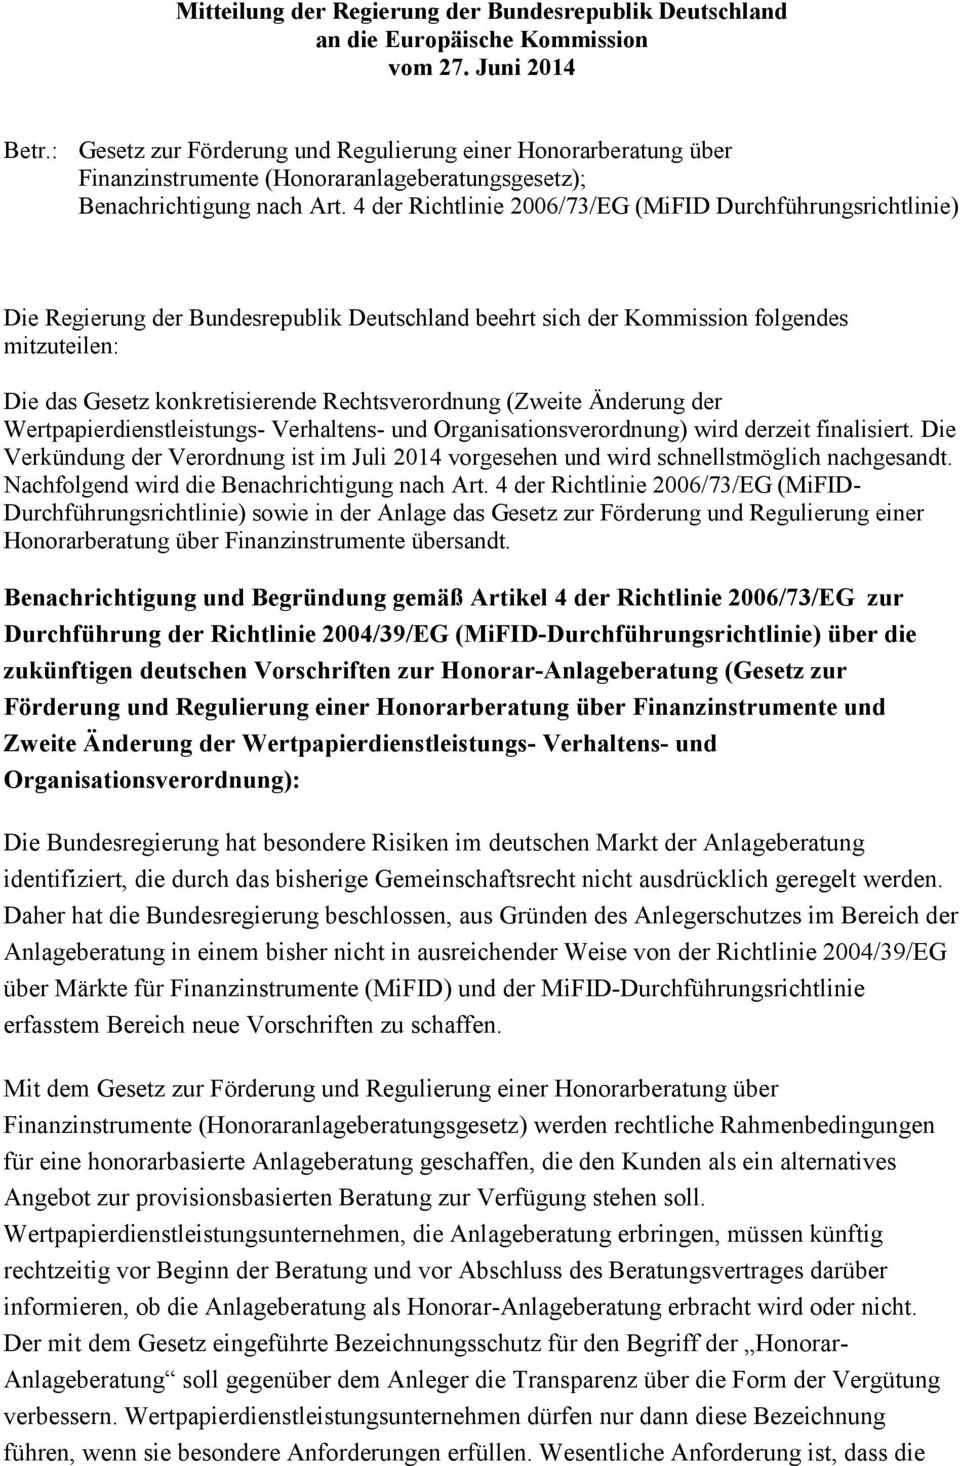 4 der Richtlinie 2006/73/EG (MiFID Durchführungsrichtlinie) Die Regierung der Bundesrepublik Deutschland beehrt sich der Kommission folgendes mitzuteilen: Die das Gesetz konkretisierende